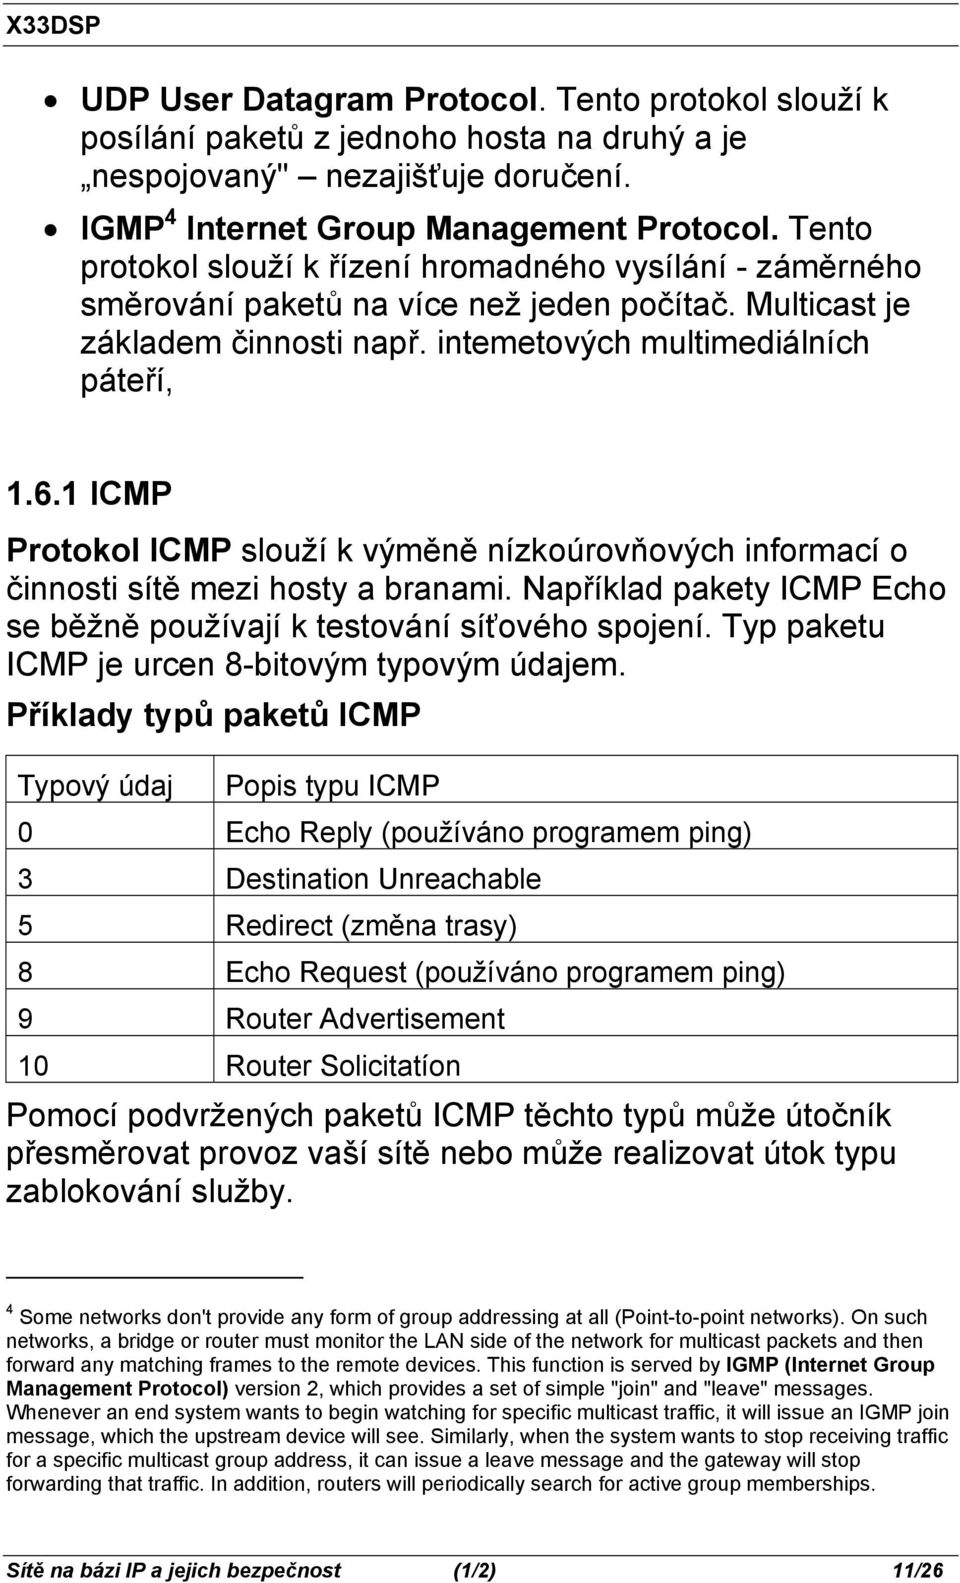 1 ICMP Protokol ICMP slouží k výměně nízkoúrovňových informací o činnosti sítě mezi hosty a branami. Například pakety ICMP Echo se běžně používají k testování síťového spojení.